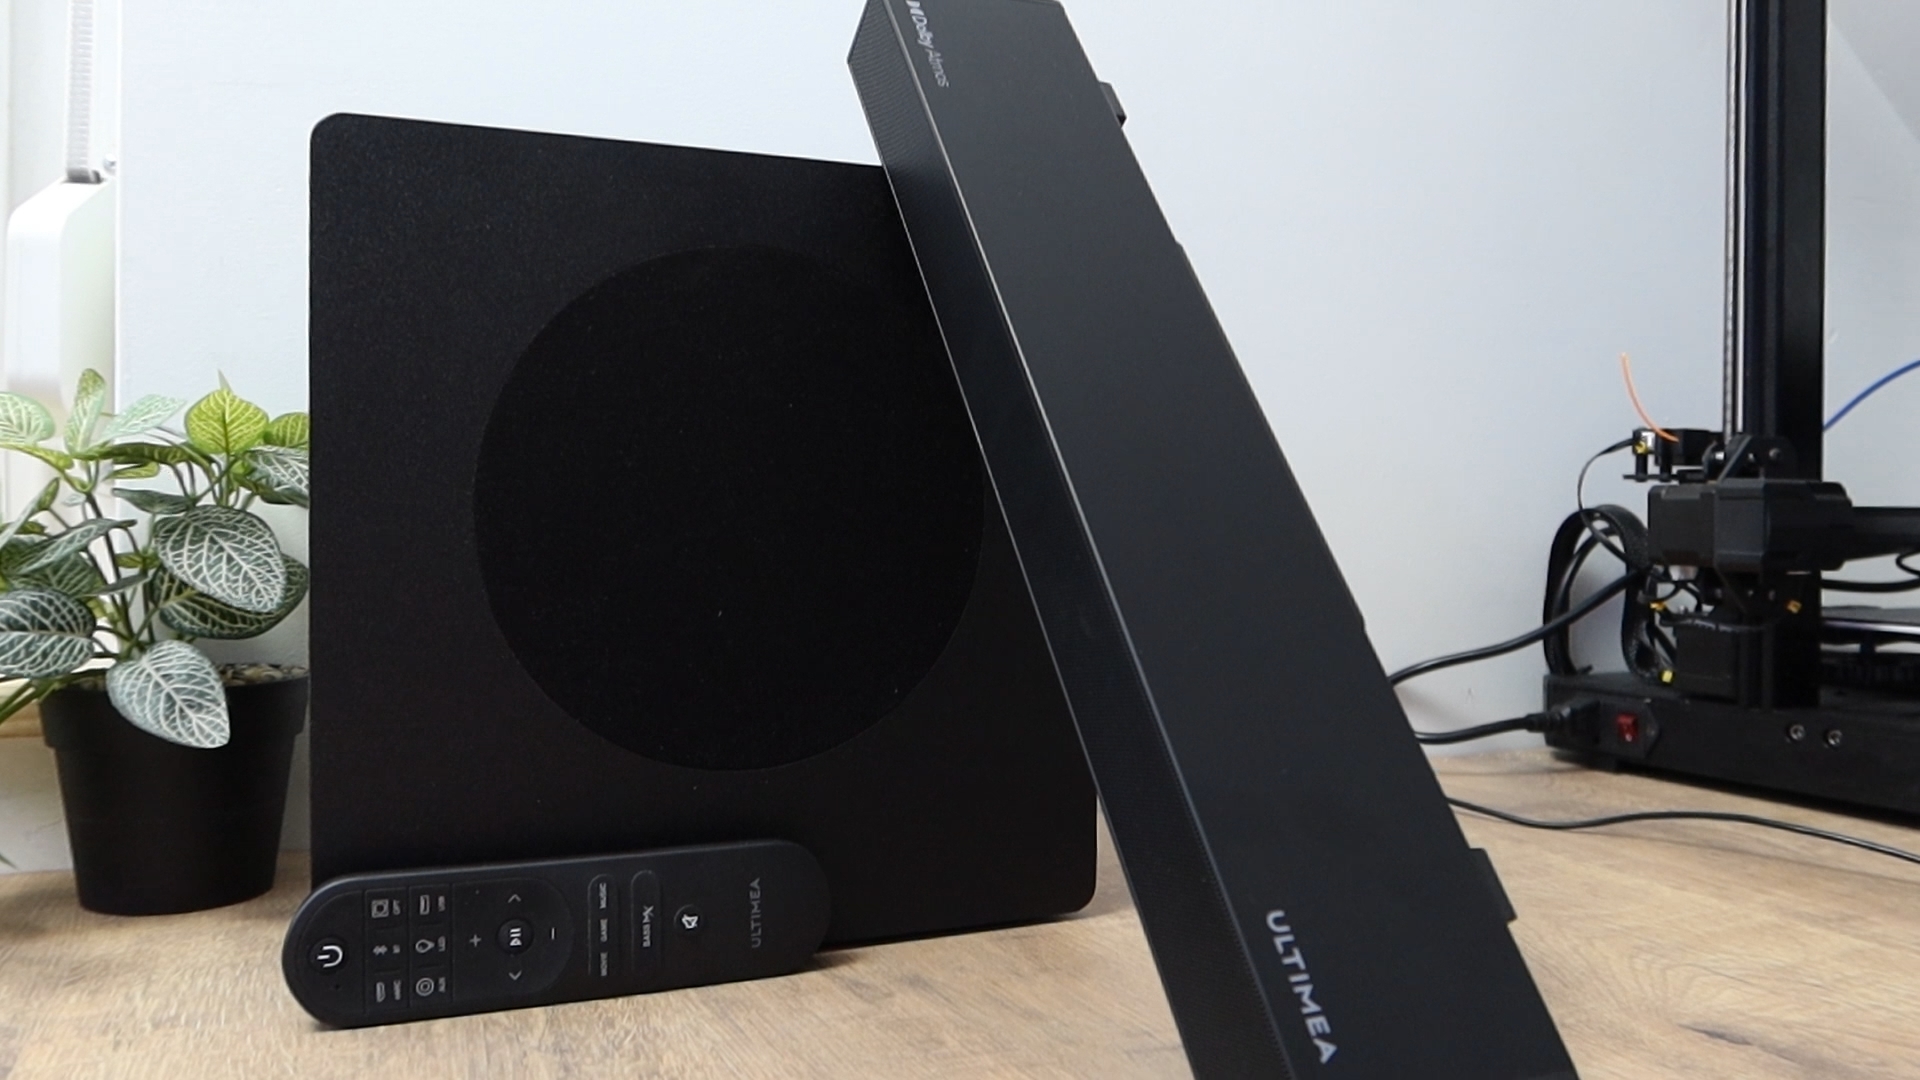 Nagyot szól! - Ultimea Nova S50 Dolby Atmos Soundbar teszt 12